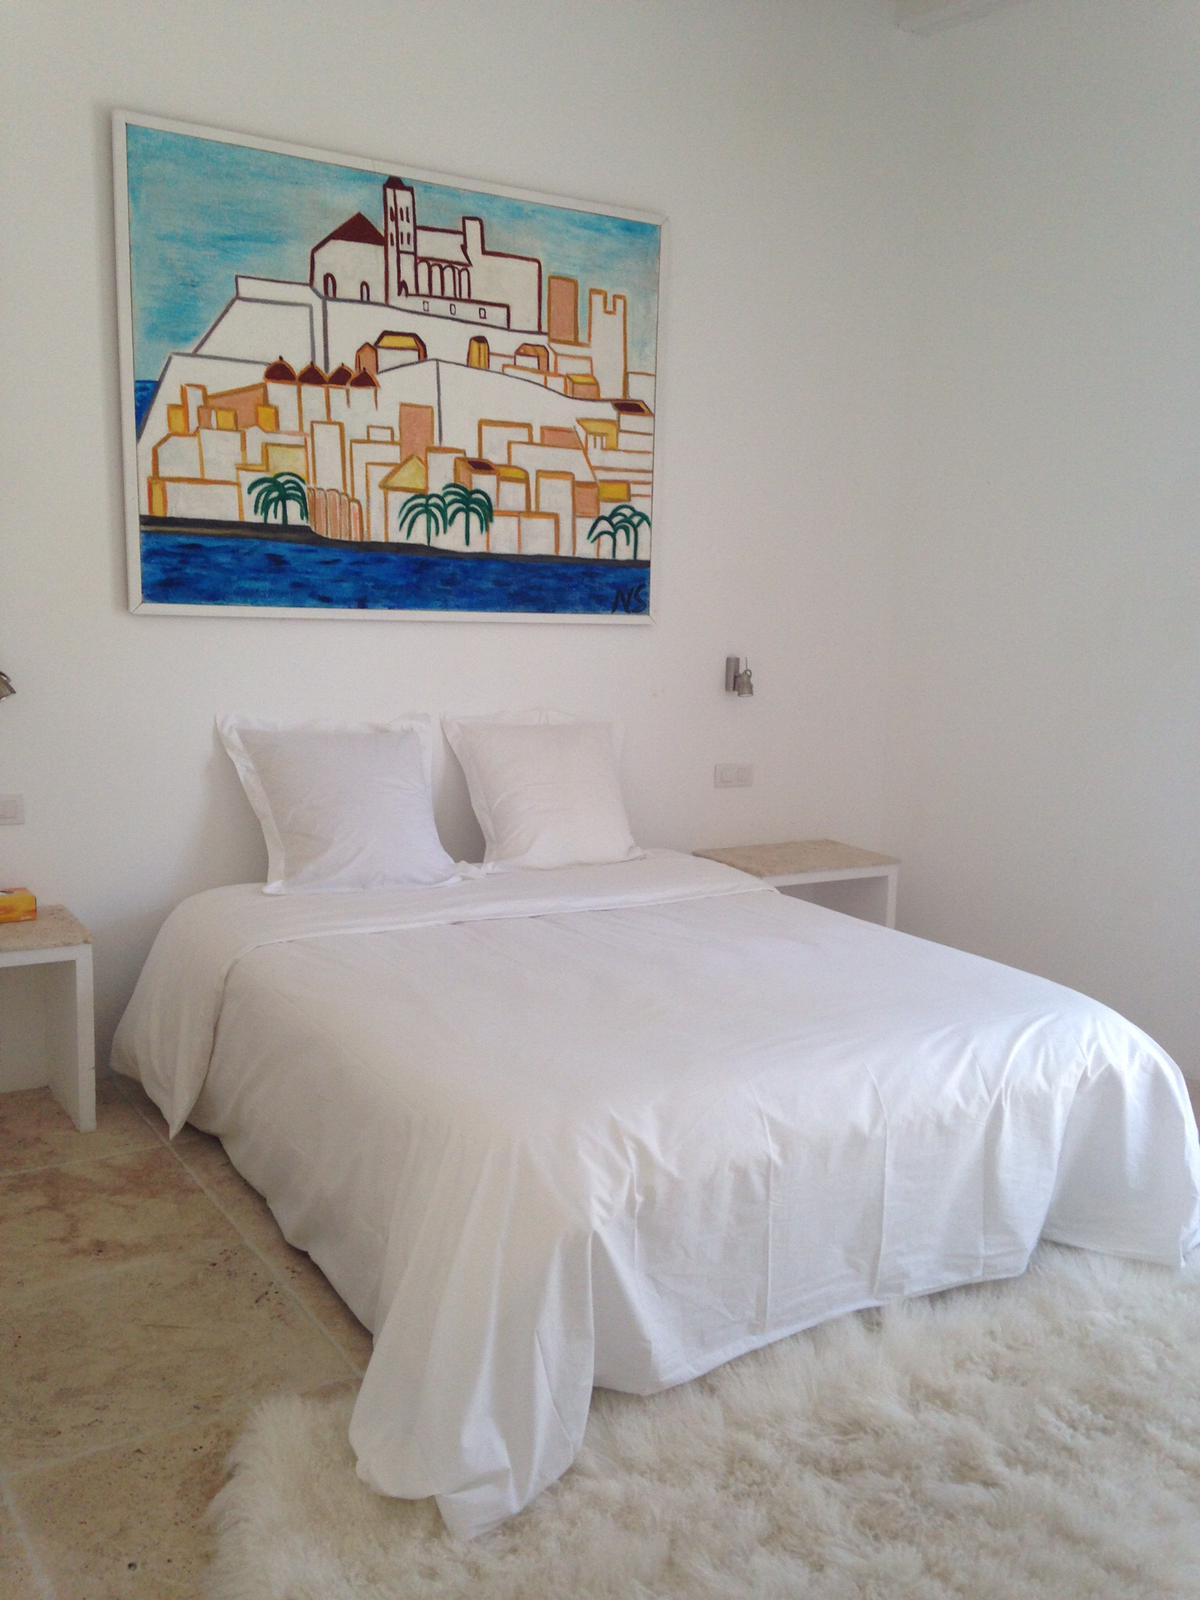 Magnifique penthouse dans la vieille ville d’Ibiza